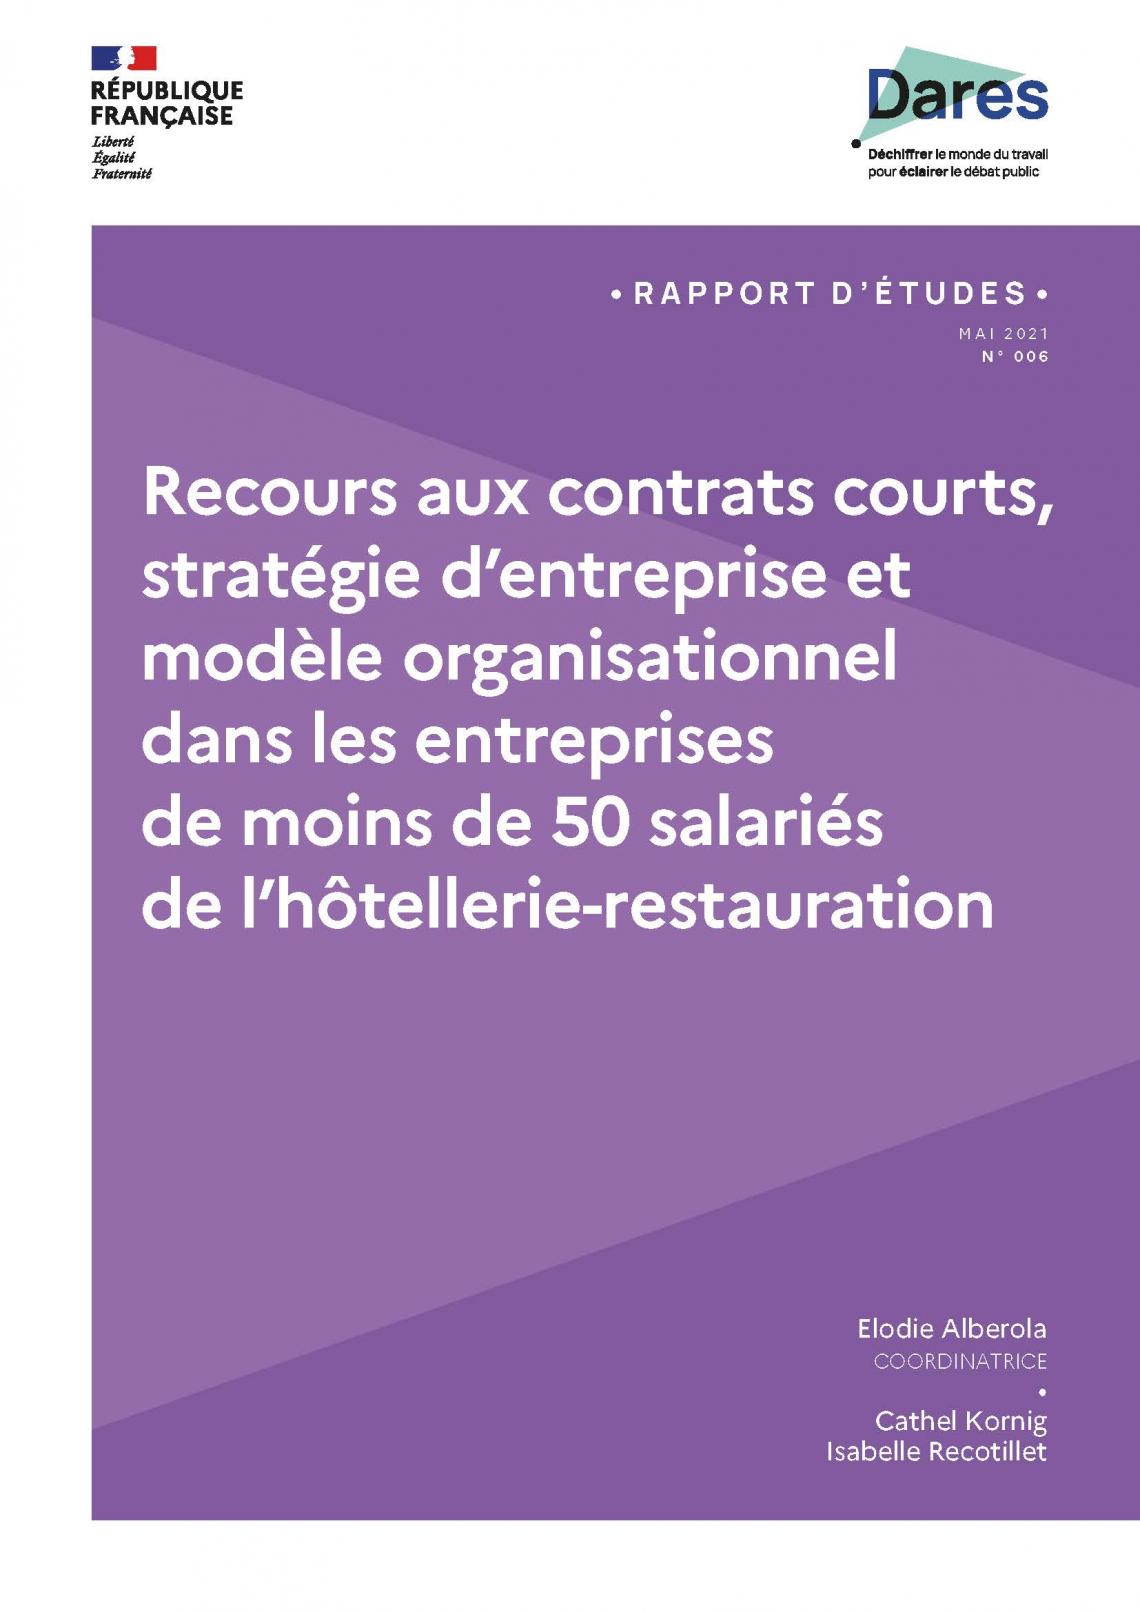 Recours aux contrats courts, stratégie d’entreprise et modèle organisationnel dans les entreprises de moins de 50 salariés de l’hôtellerie-restauration